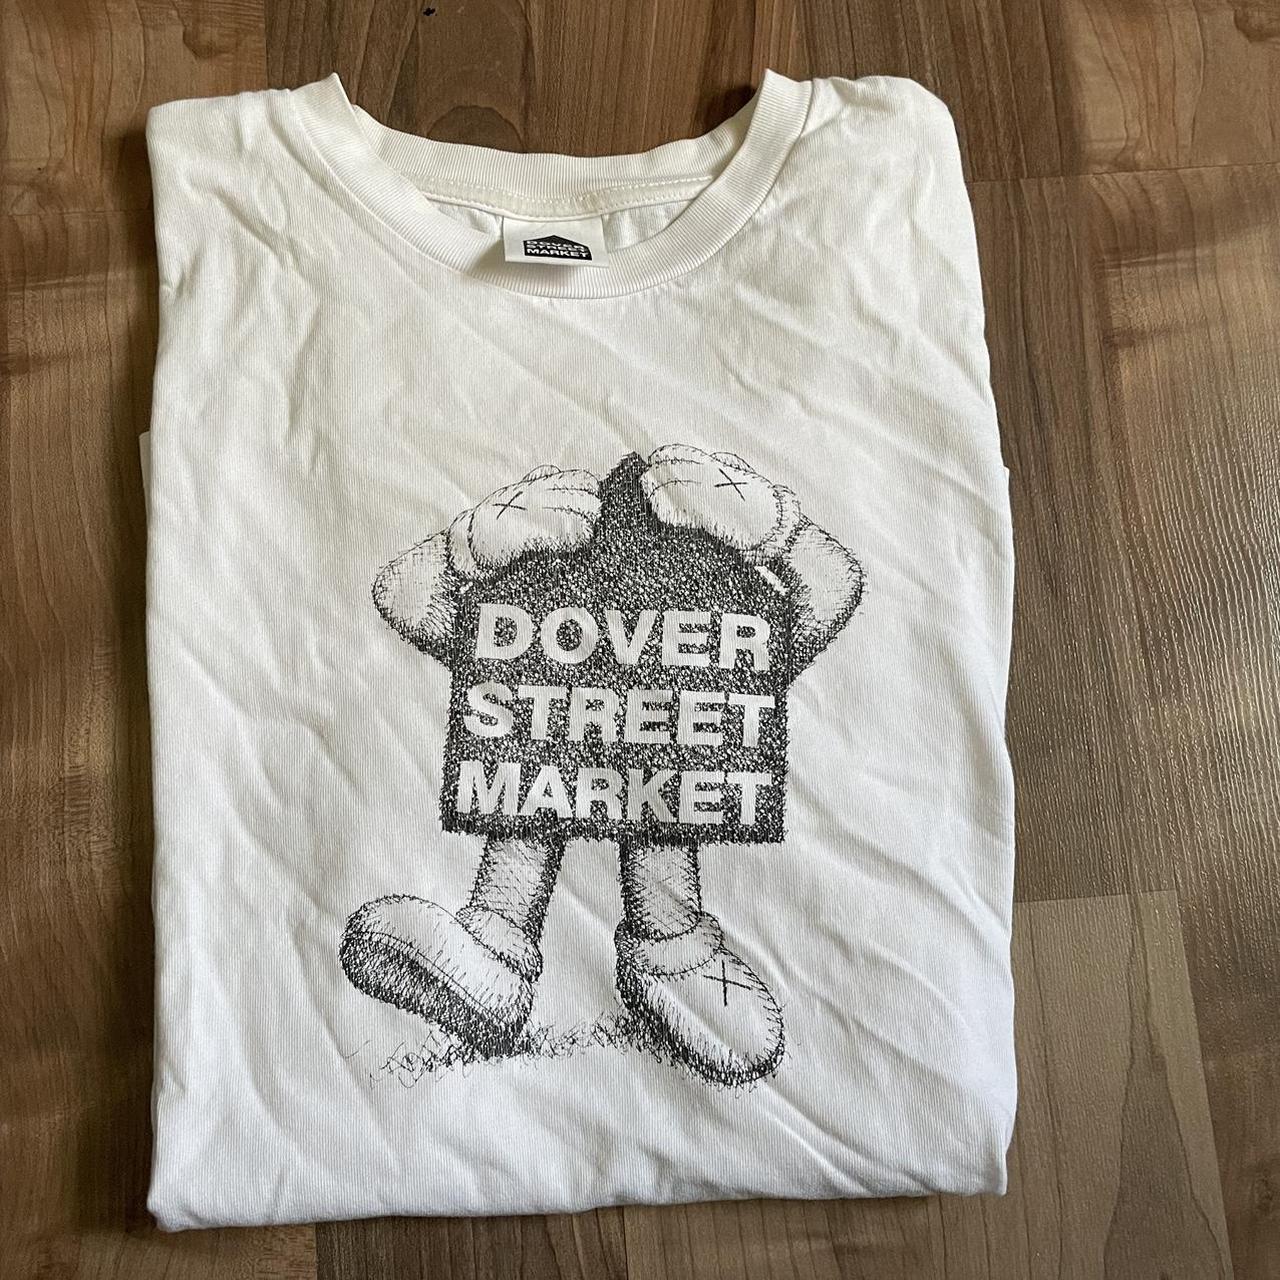 Dover Street Market Men's White T-shirt